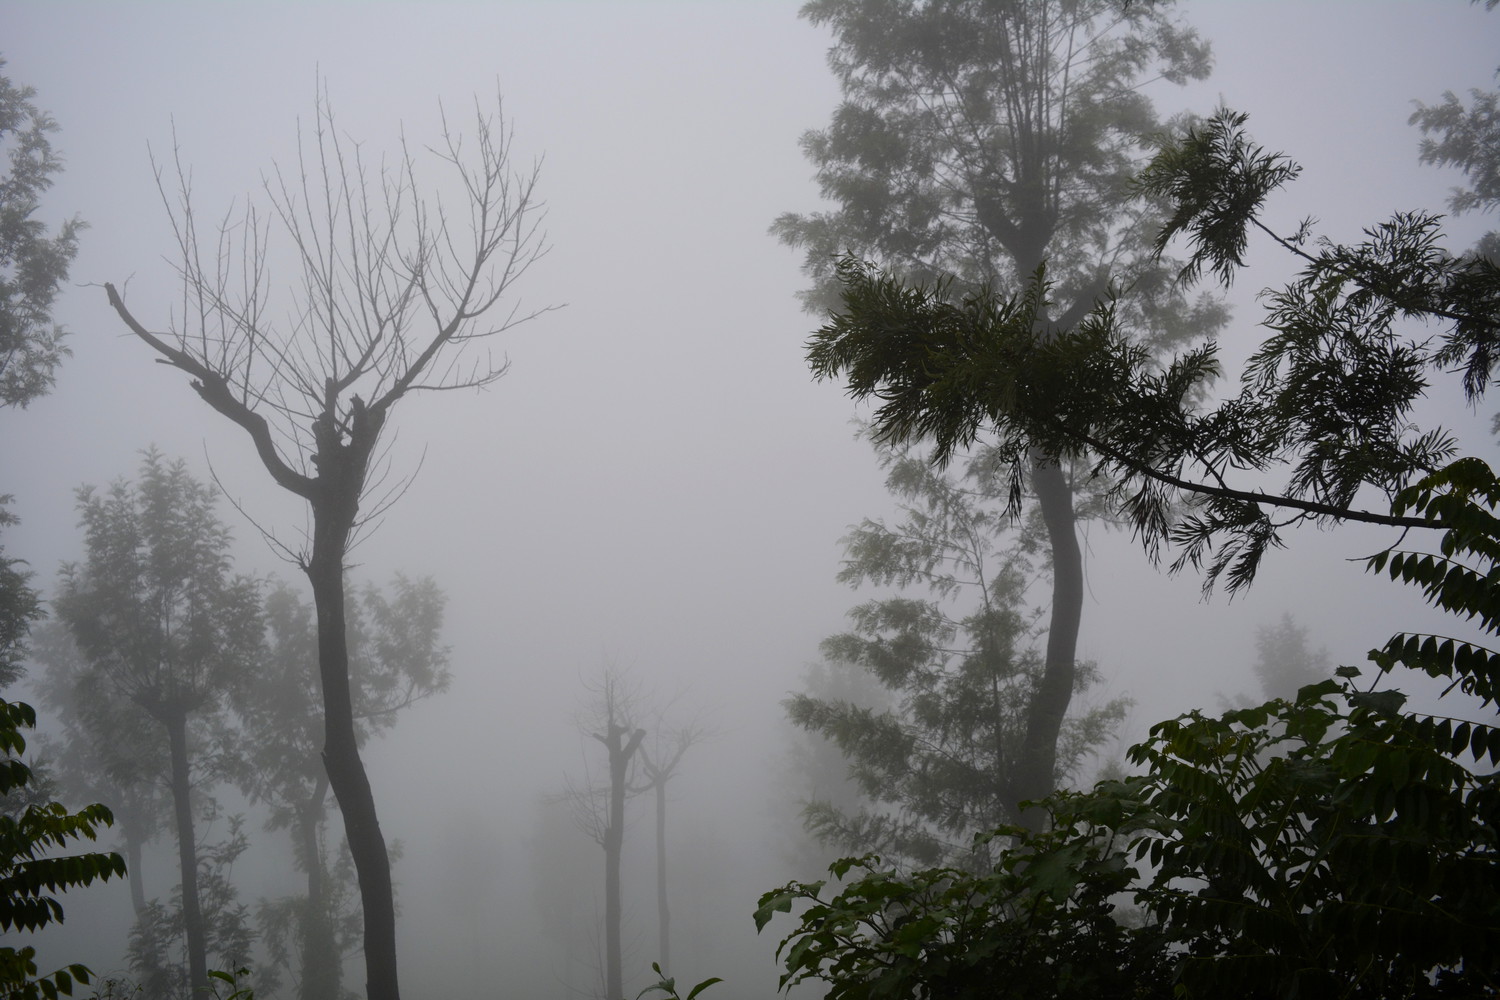 Trees covered in dense fog